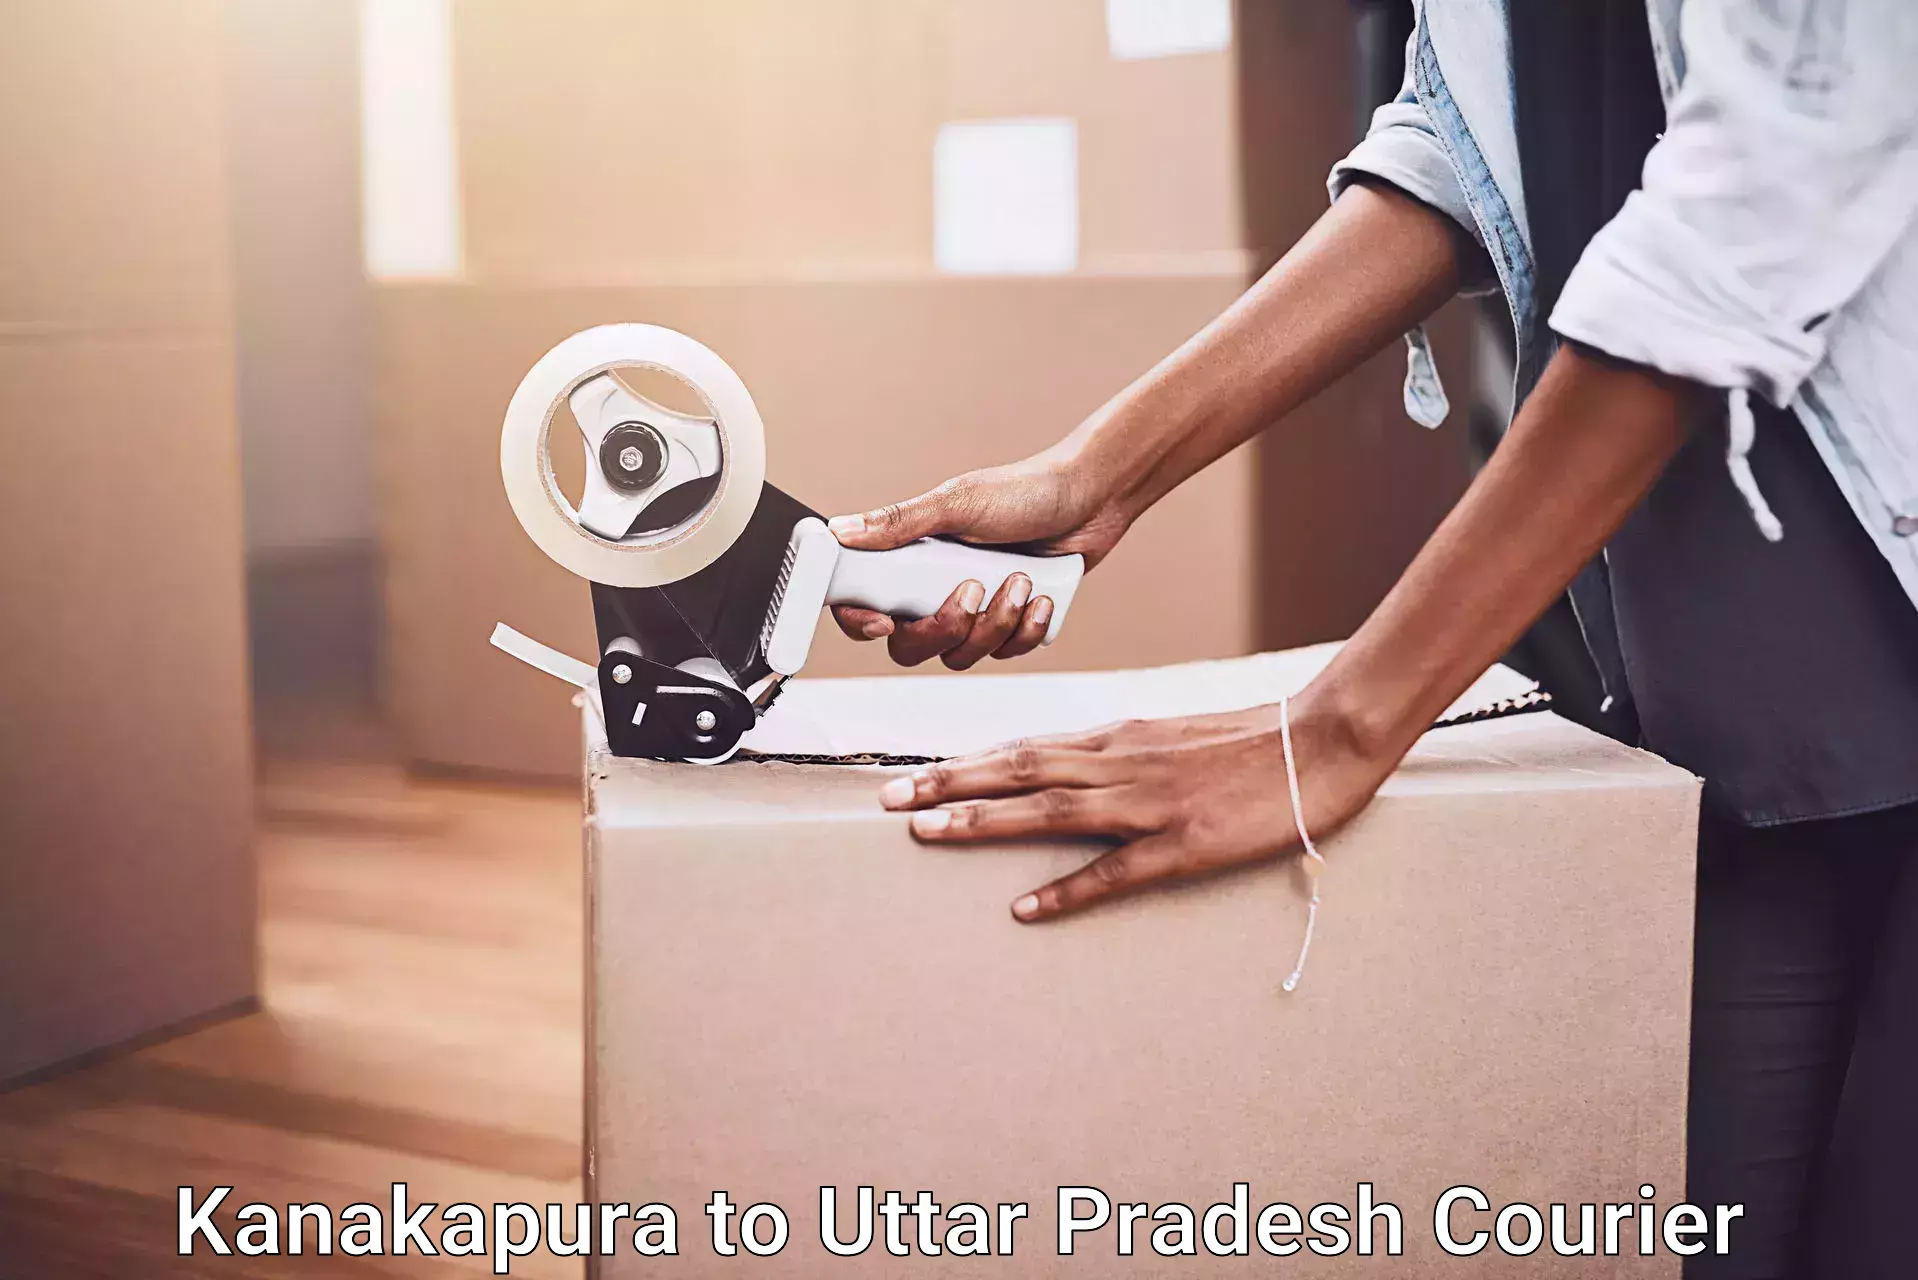 Furniture transport solutions Kanakapura to Uttar Pradesh